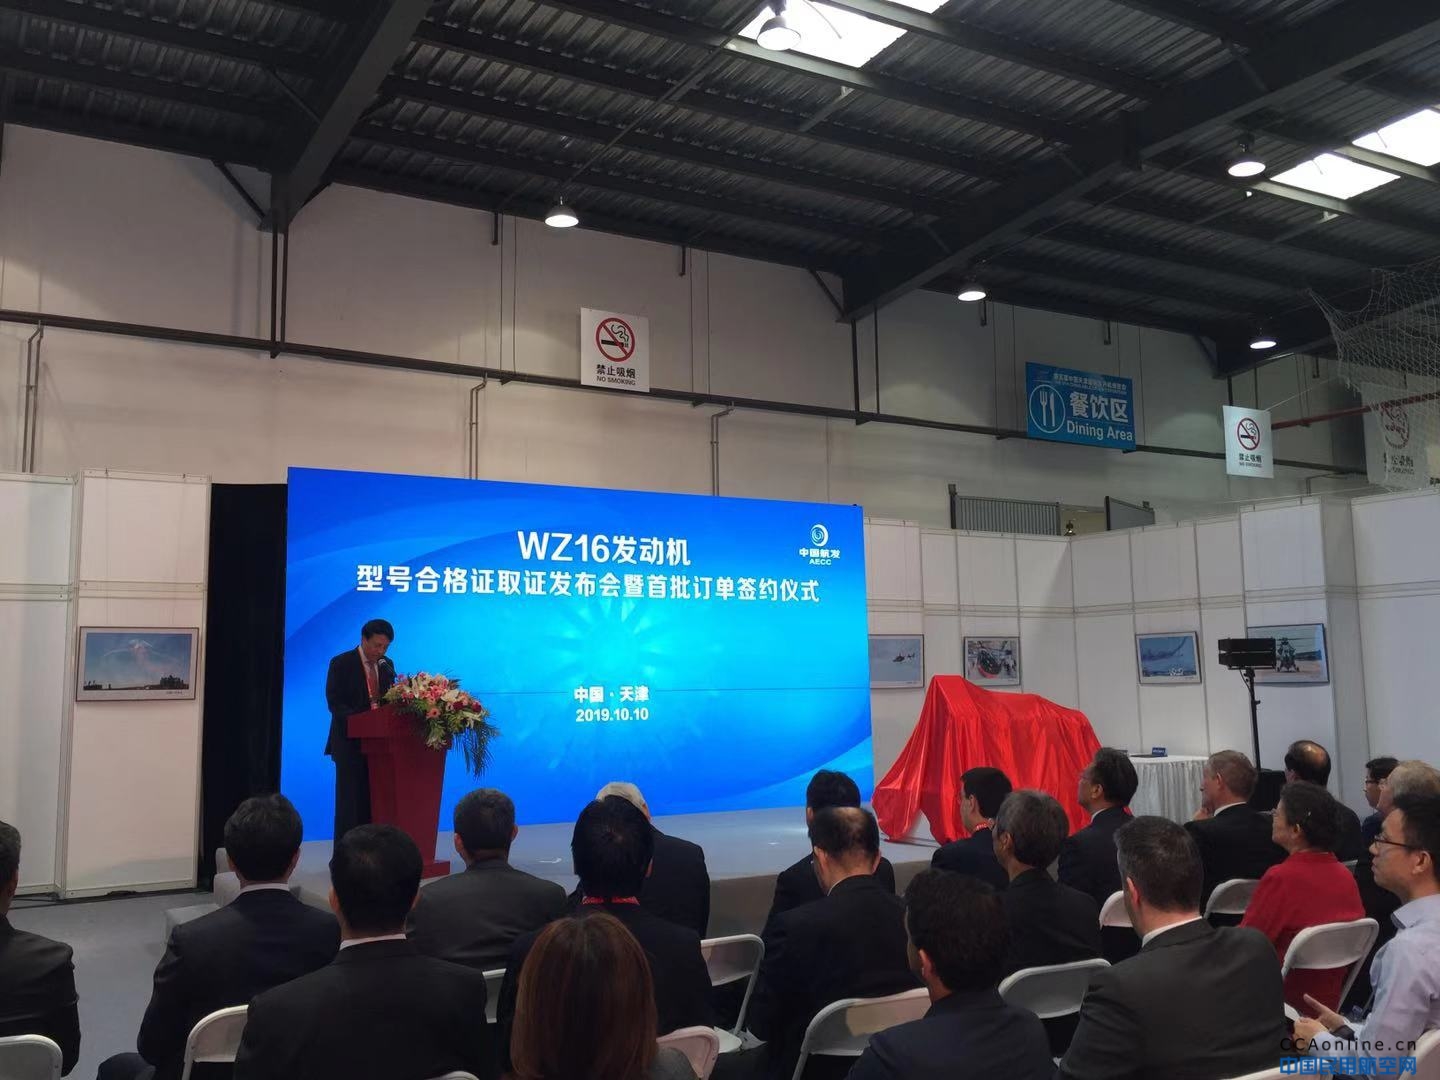 WZ16发动机型号合格证发布会暨首批订单签约仪式